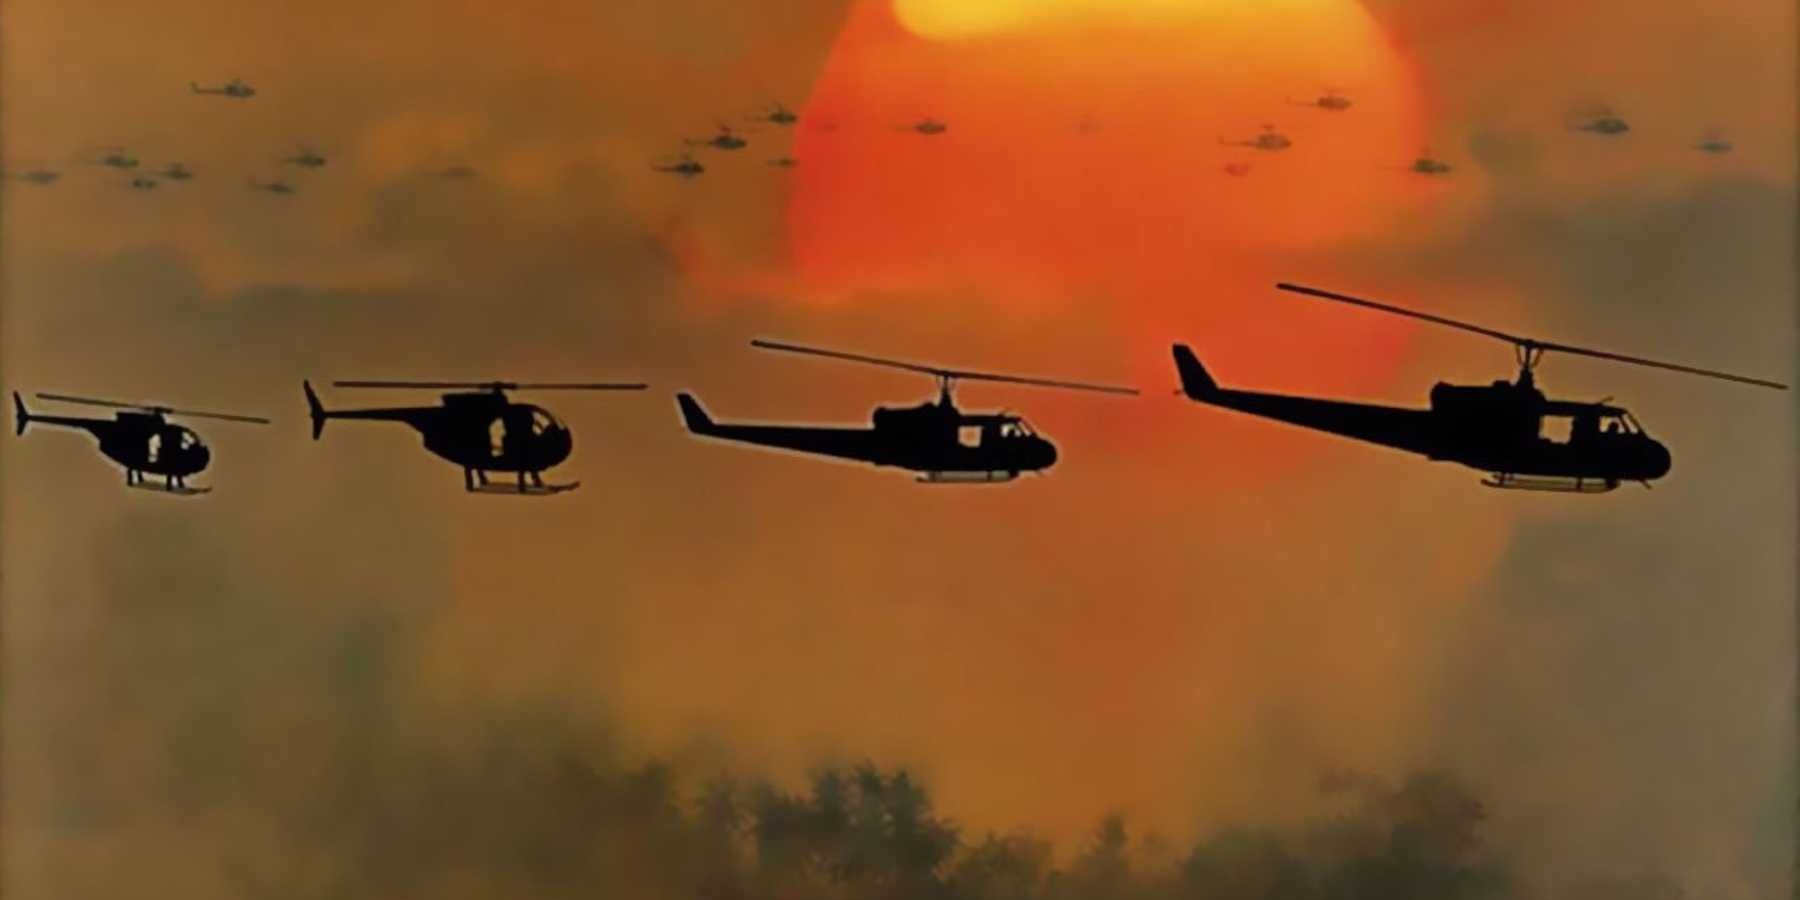 Quatre hélicoptères volent au loin avec le soleil ardent en arrière-plan dans Apocalypse Now.